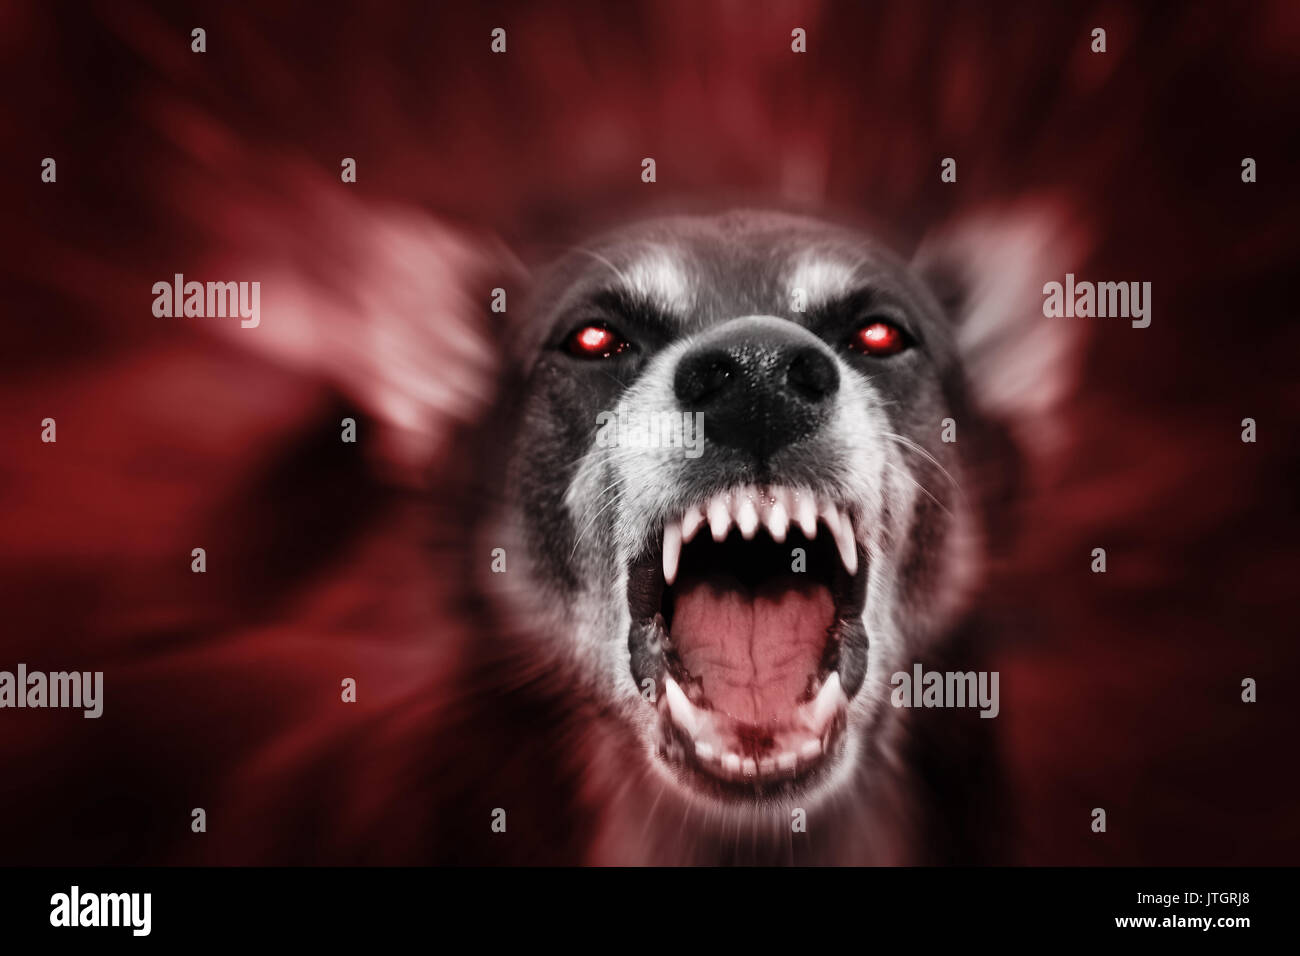 Rosso incandescente eyed dog-come aggressivo attacco demoniaco bestia, incarnazione del male, di paura e di seguito. Foto Stock